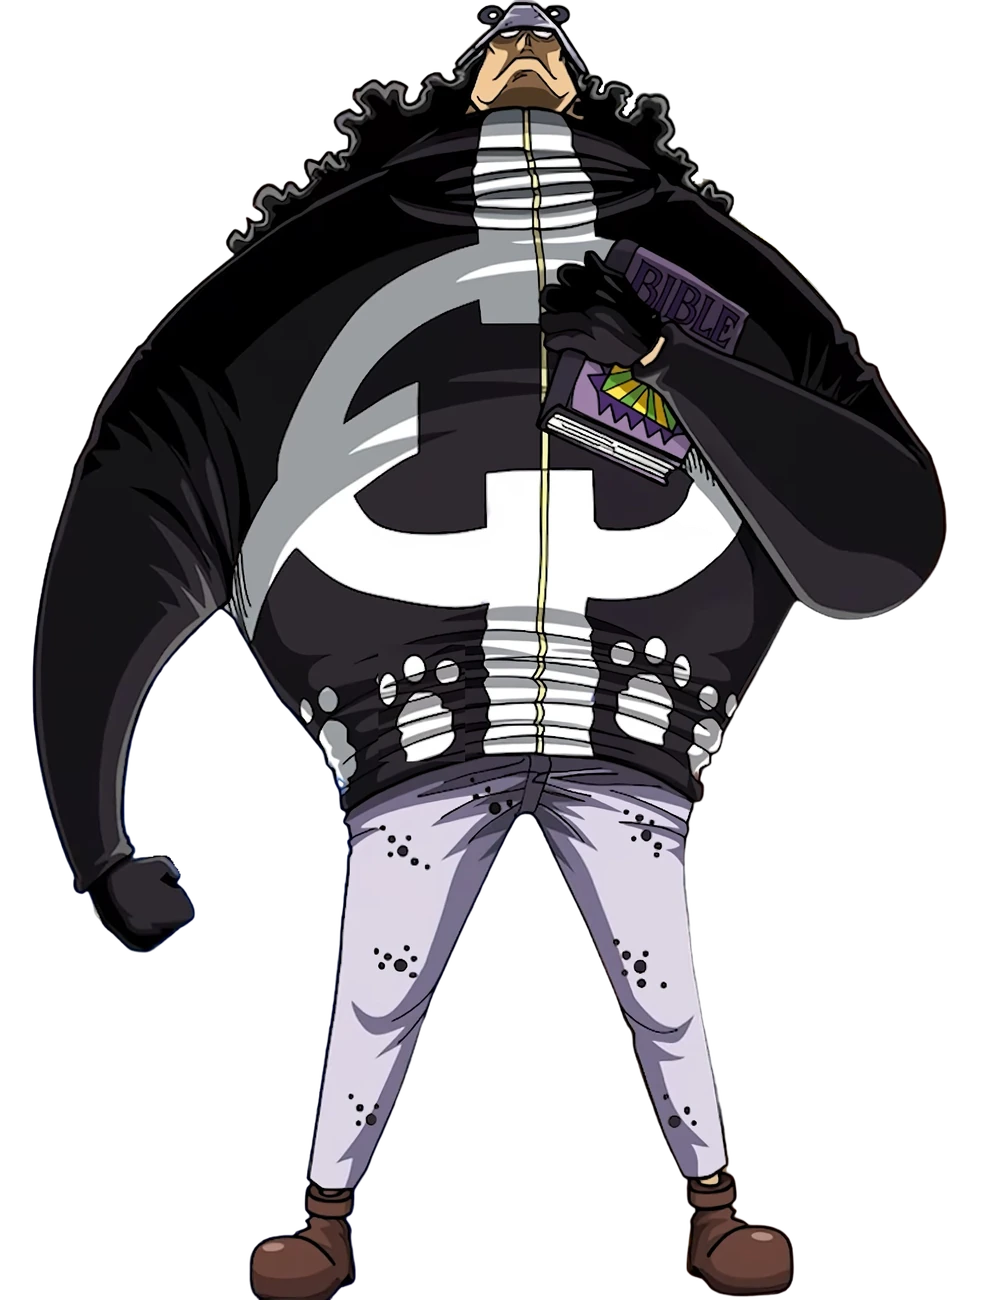 Zephyr (One Piece), Villains Wiki